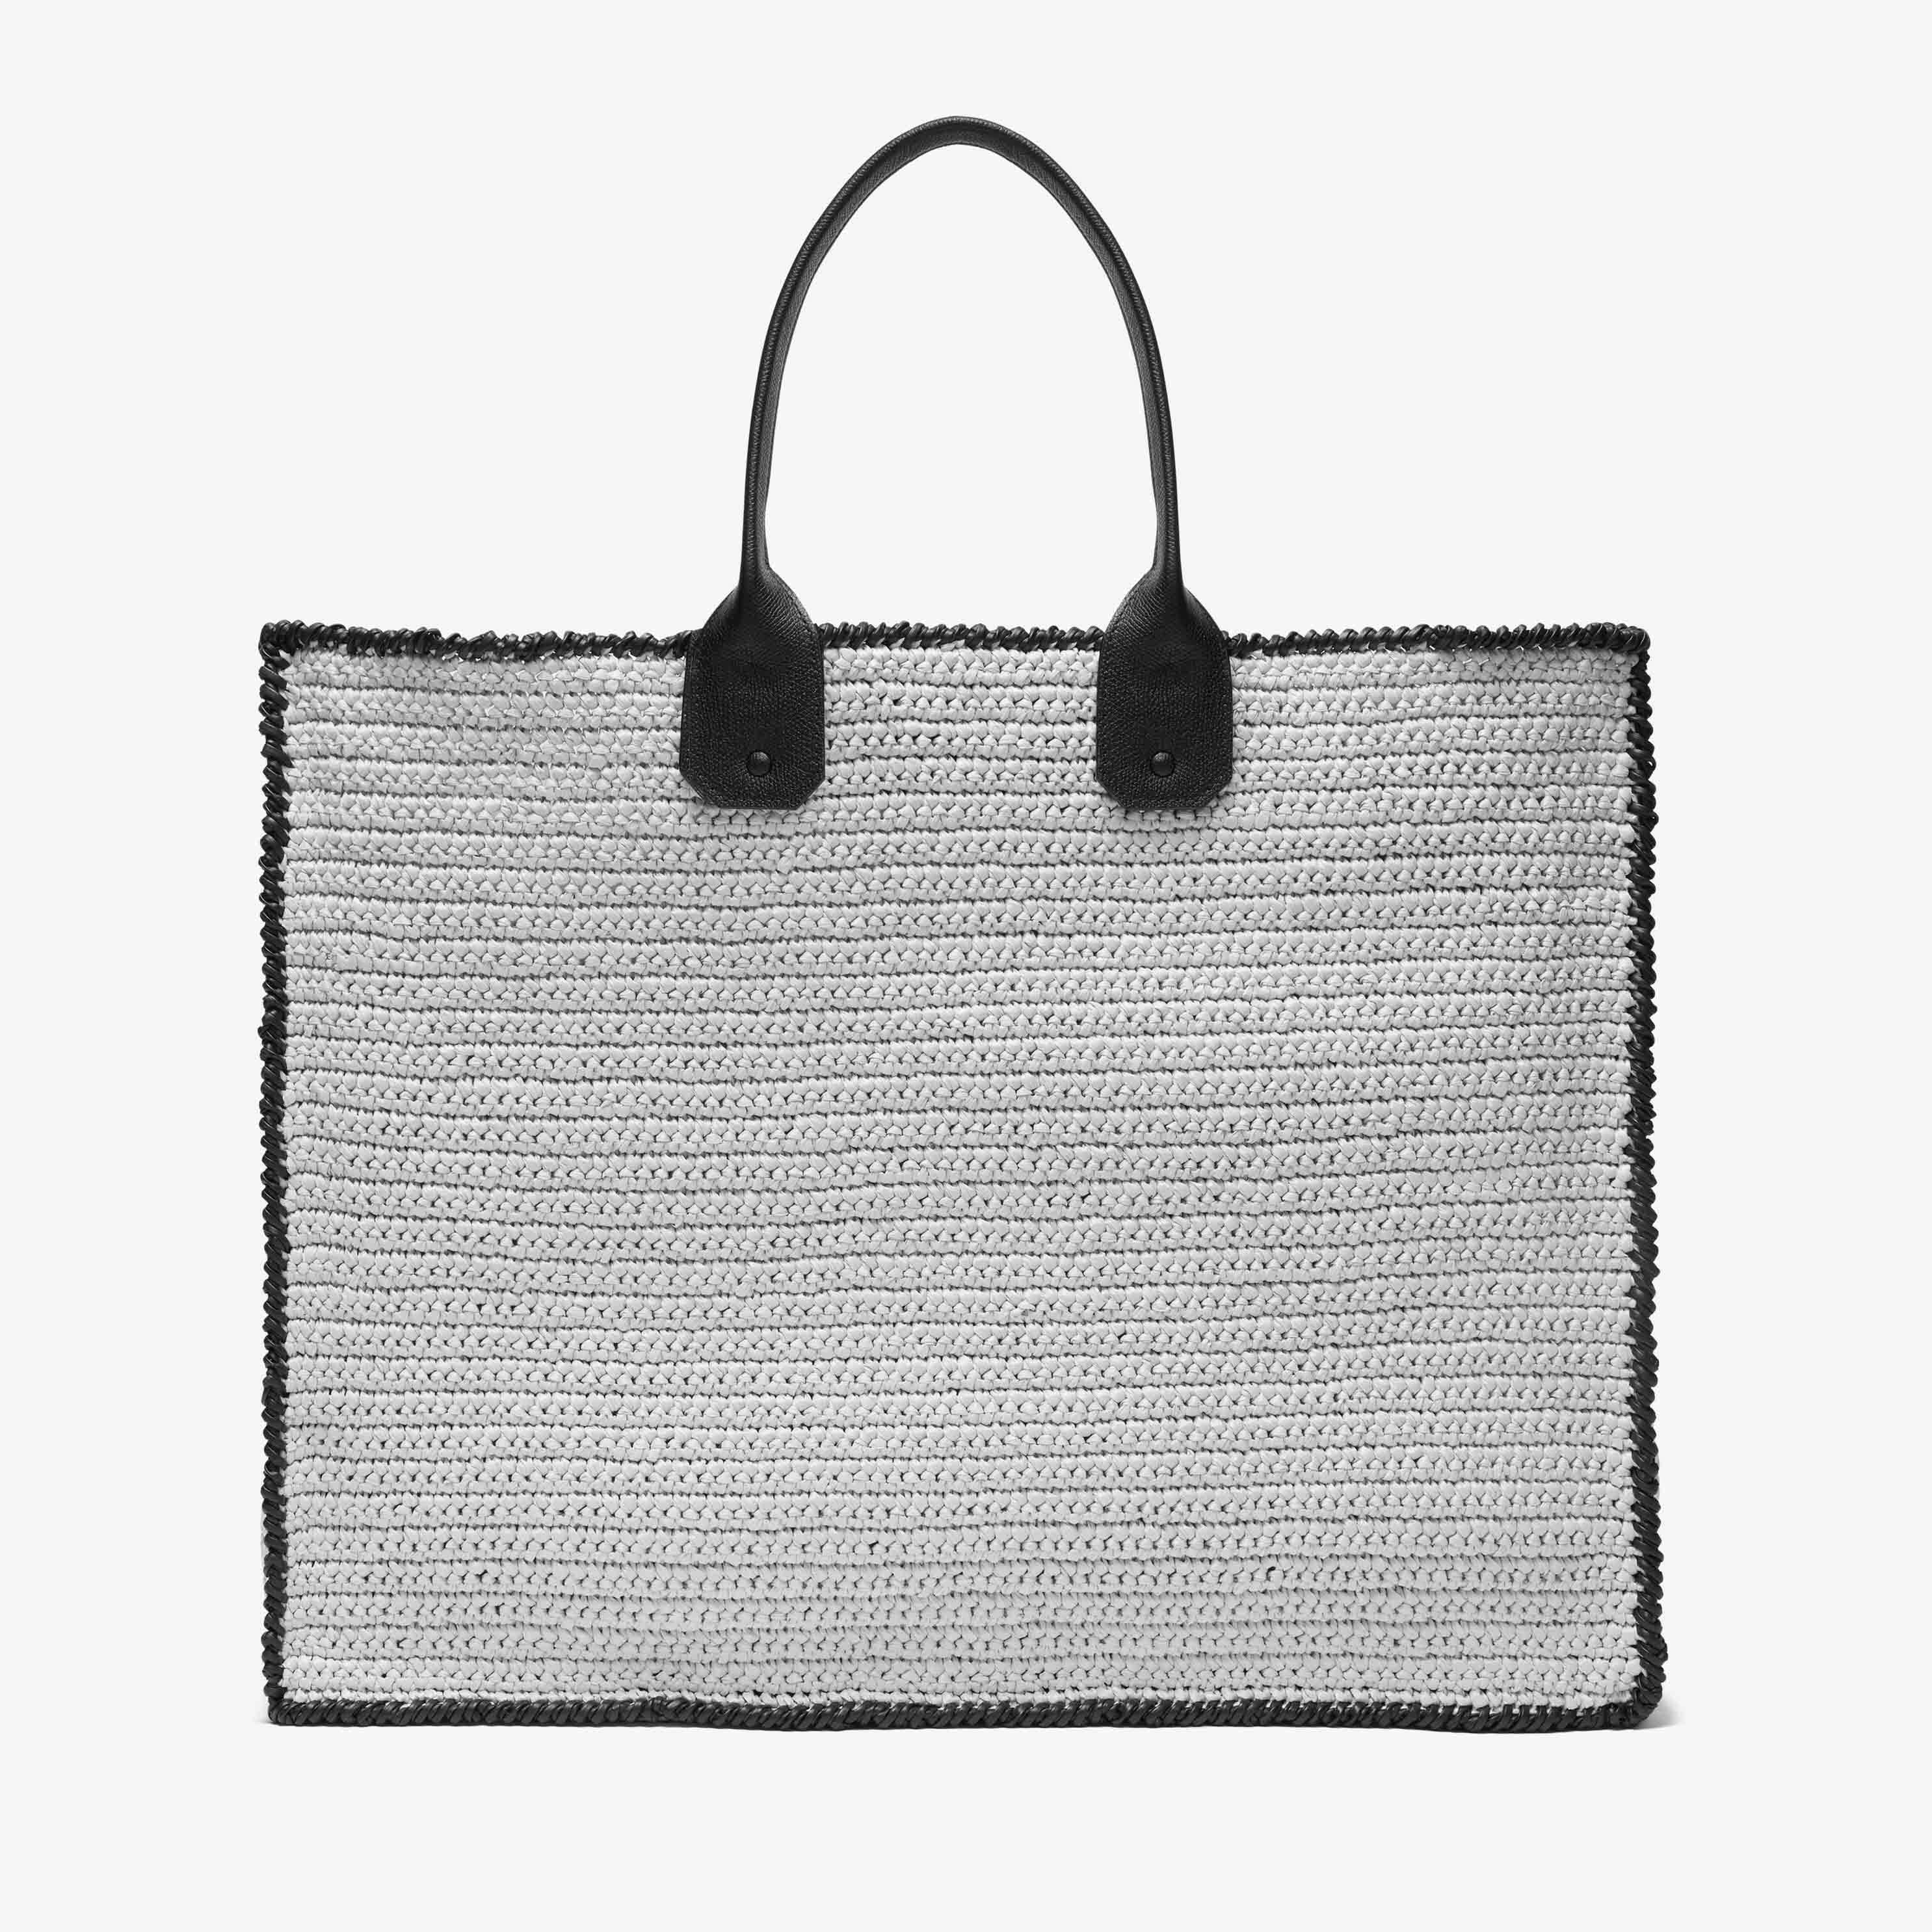 Soft Tote Raffia Crochet maxi bag - Beige/Black - Rafia/Vitello VS - Valextra - 6